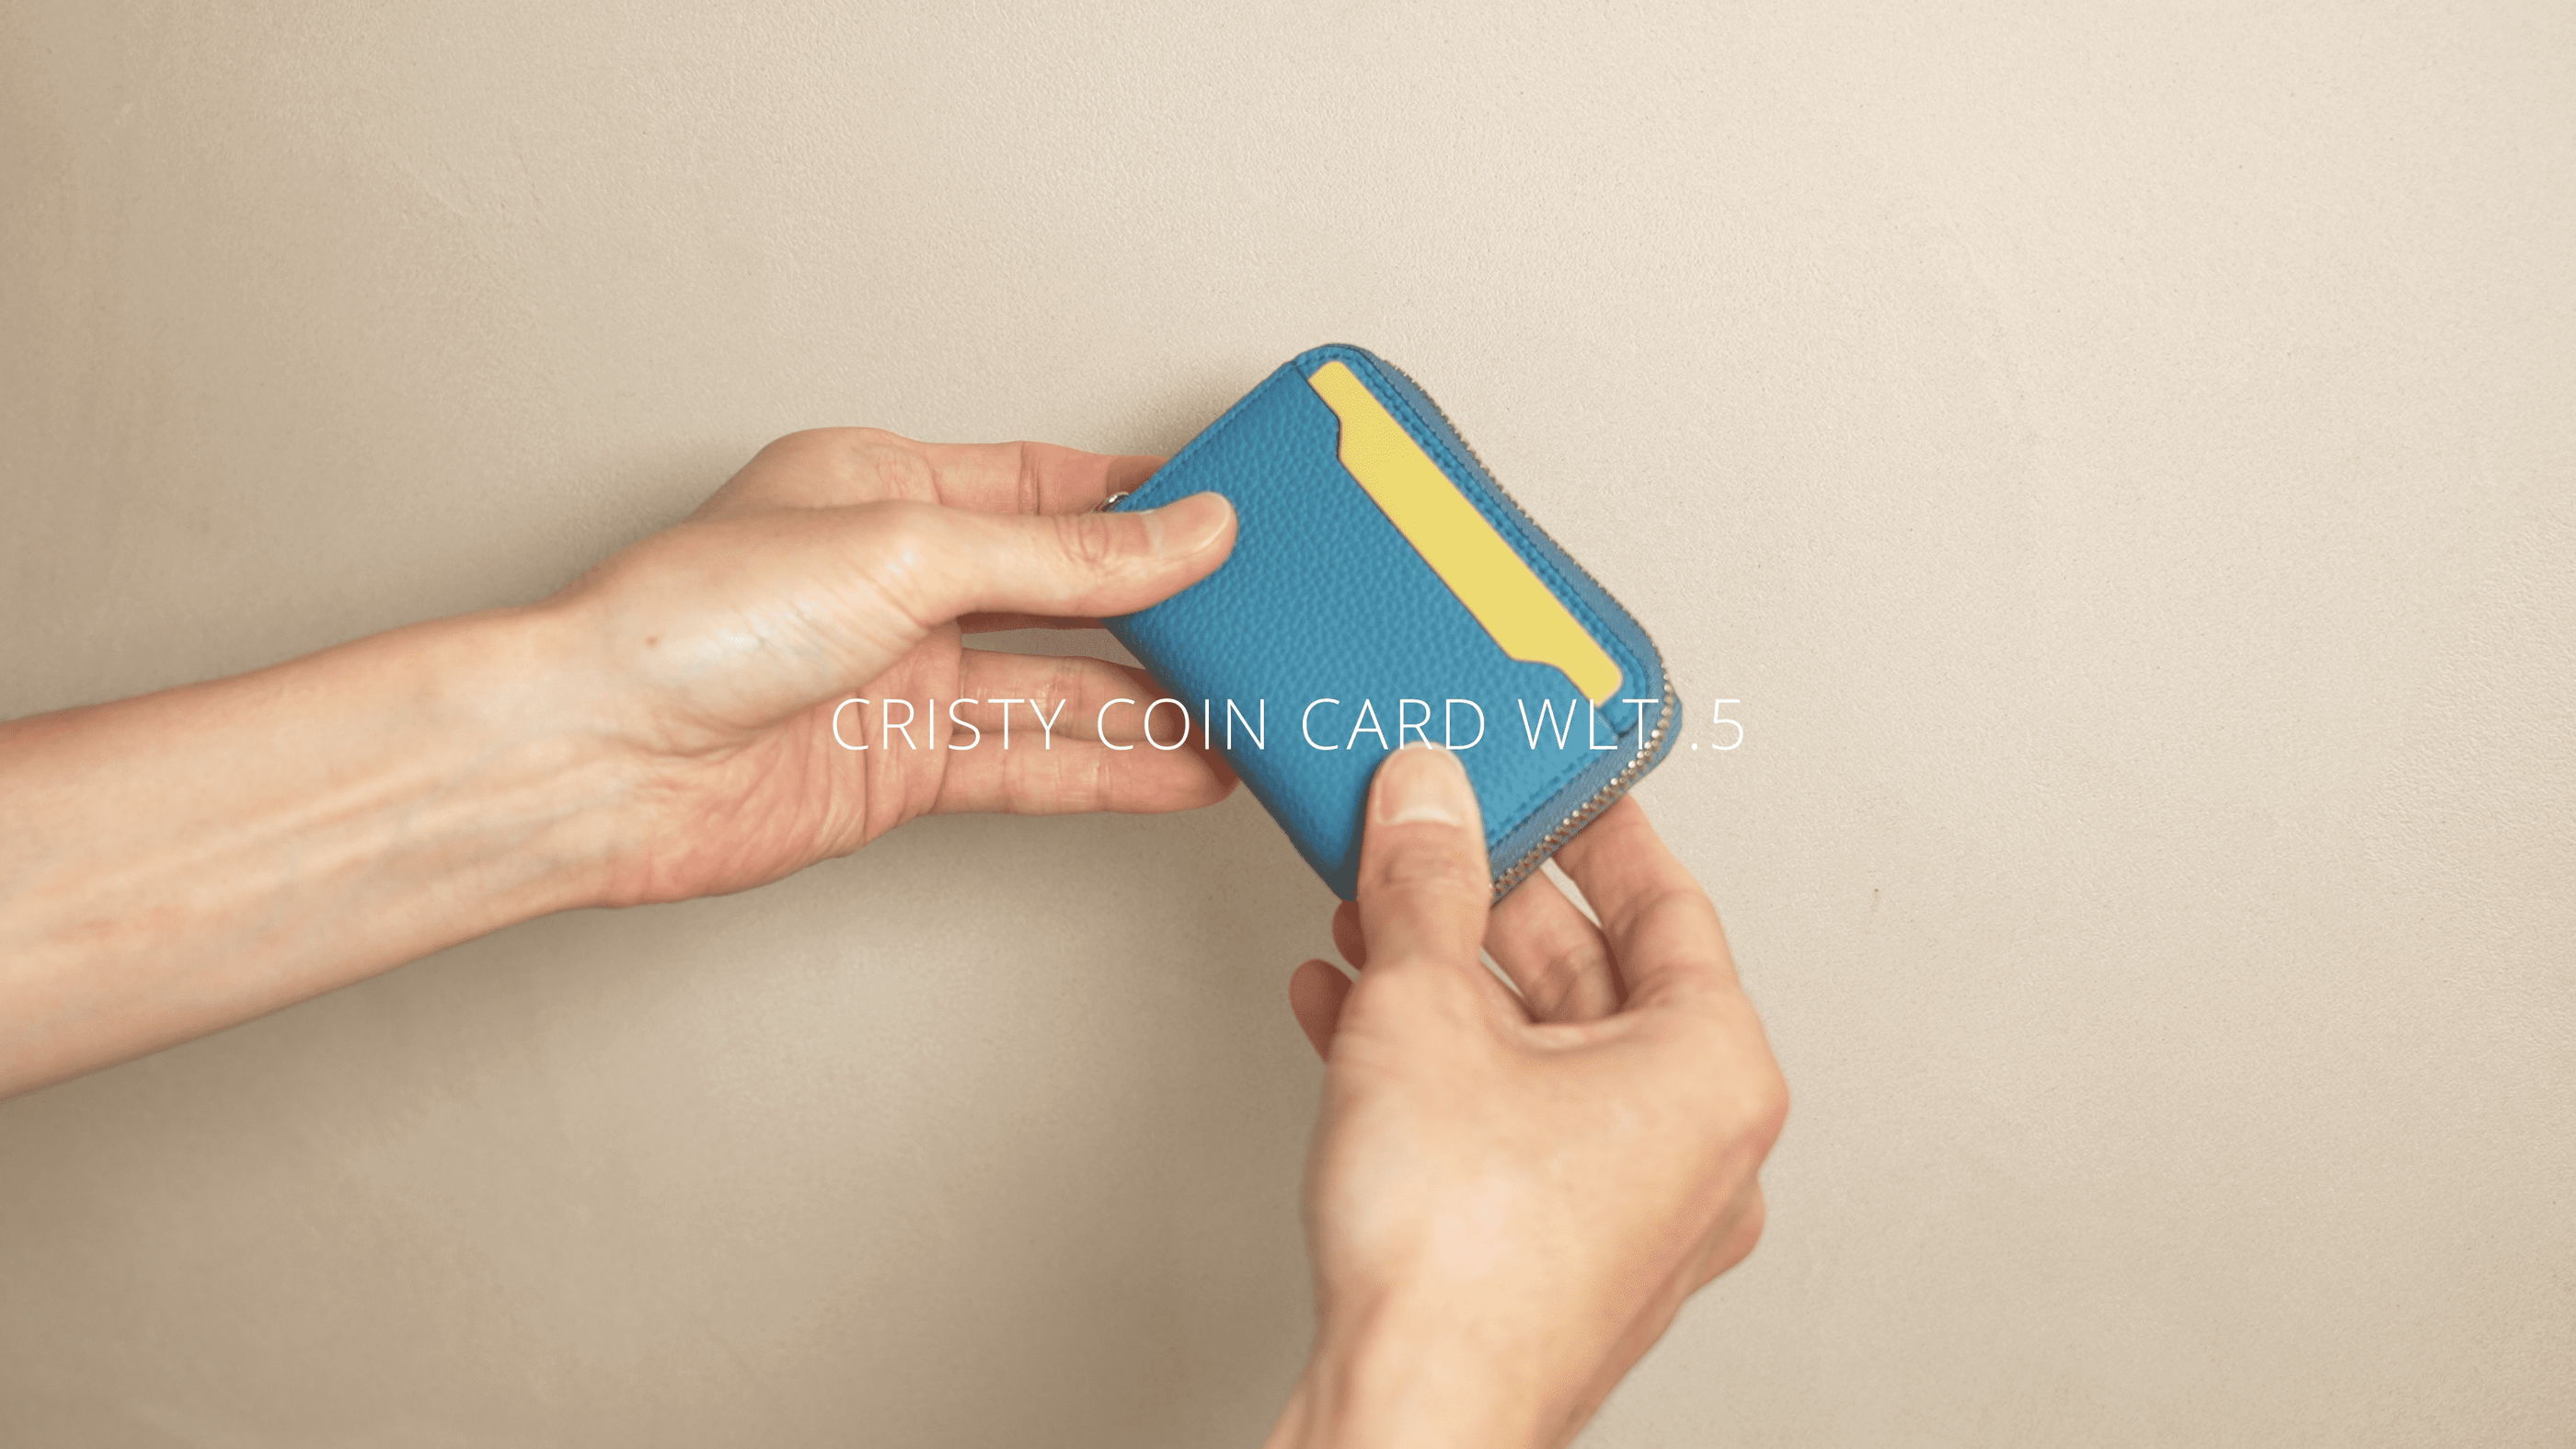 CRISTY COIN CARD WLT (クリスティコインカードウォレット) - ITTI (イッチ) | 財布 さいふ サイフ ミニ 小さい コンパクト メンズ レディース ブランド